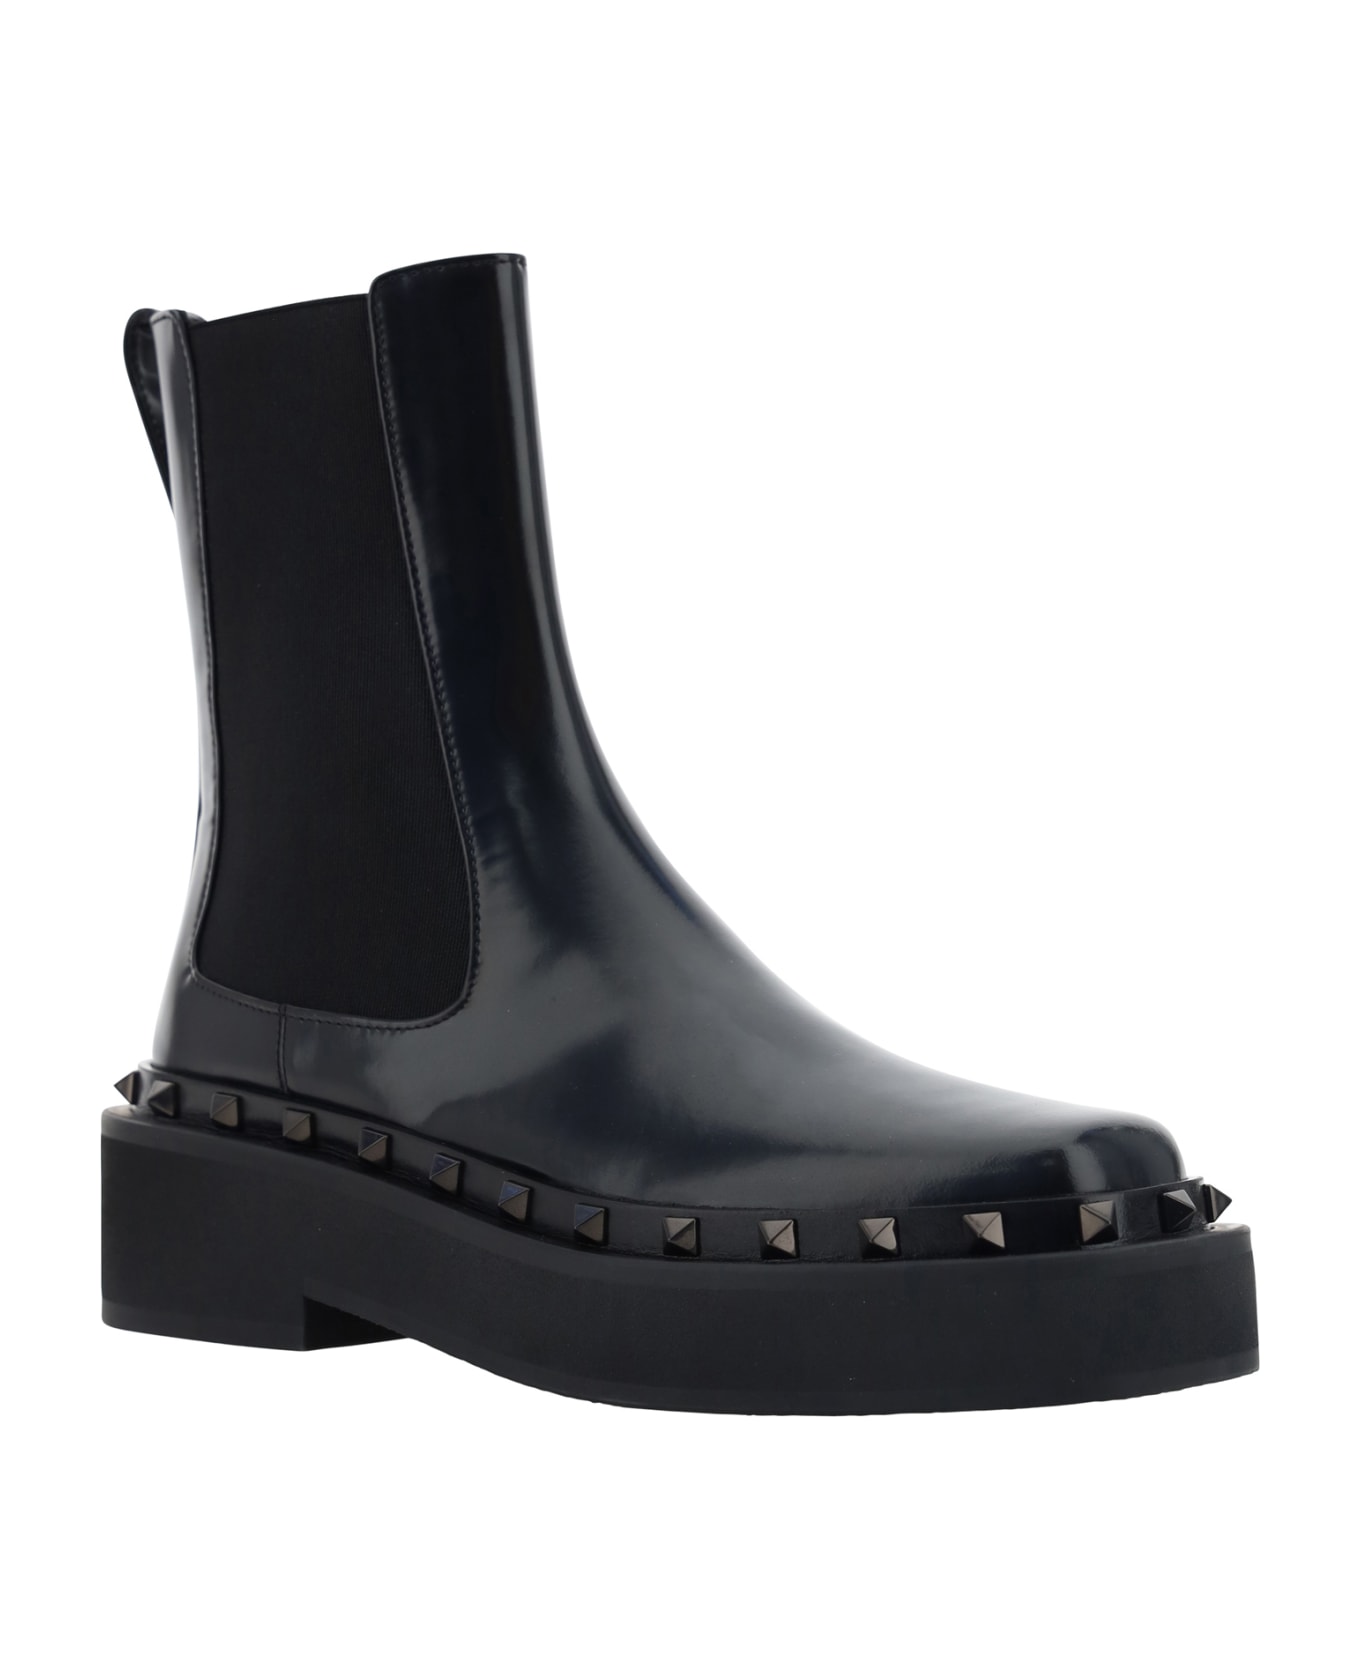 Valentino Garavani Garavani Rockstud M-way Boots - Black ブーツ